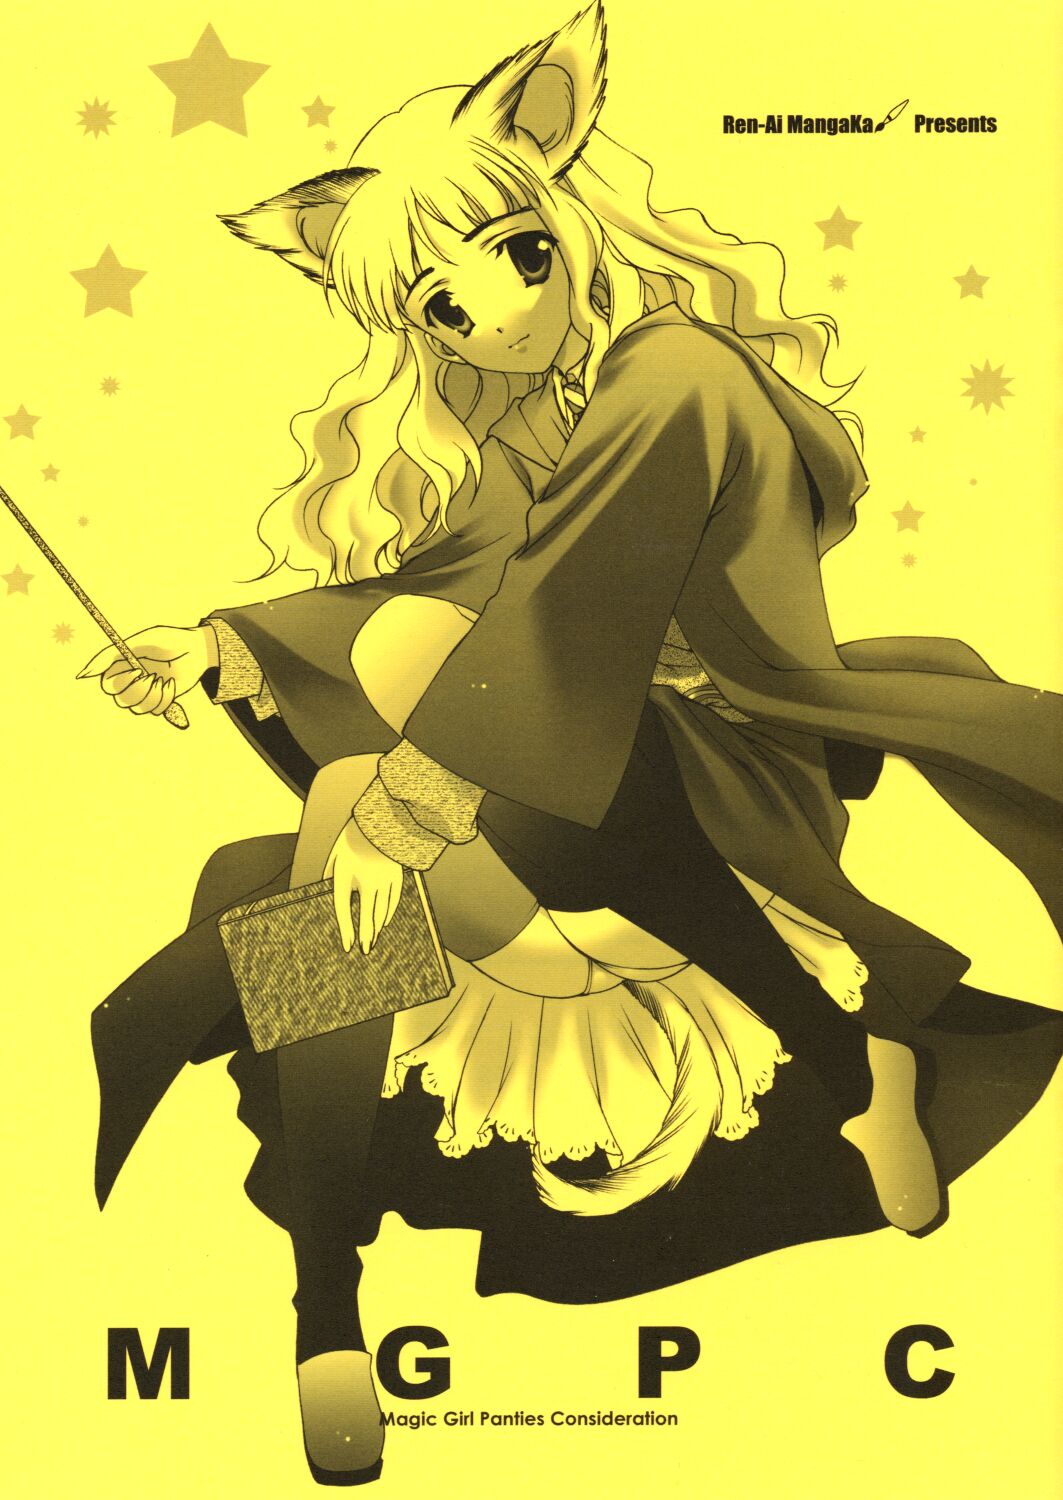 (CR33) [Renai Mangaka (Naruse Hirofumi)] MGPC - Magic Girl Panties Consideration (Harry Potter) page 1 full